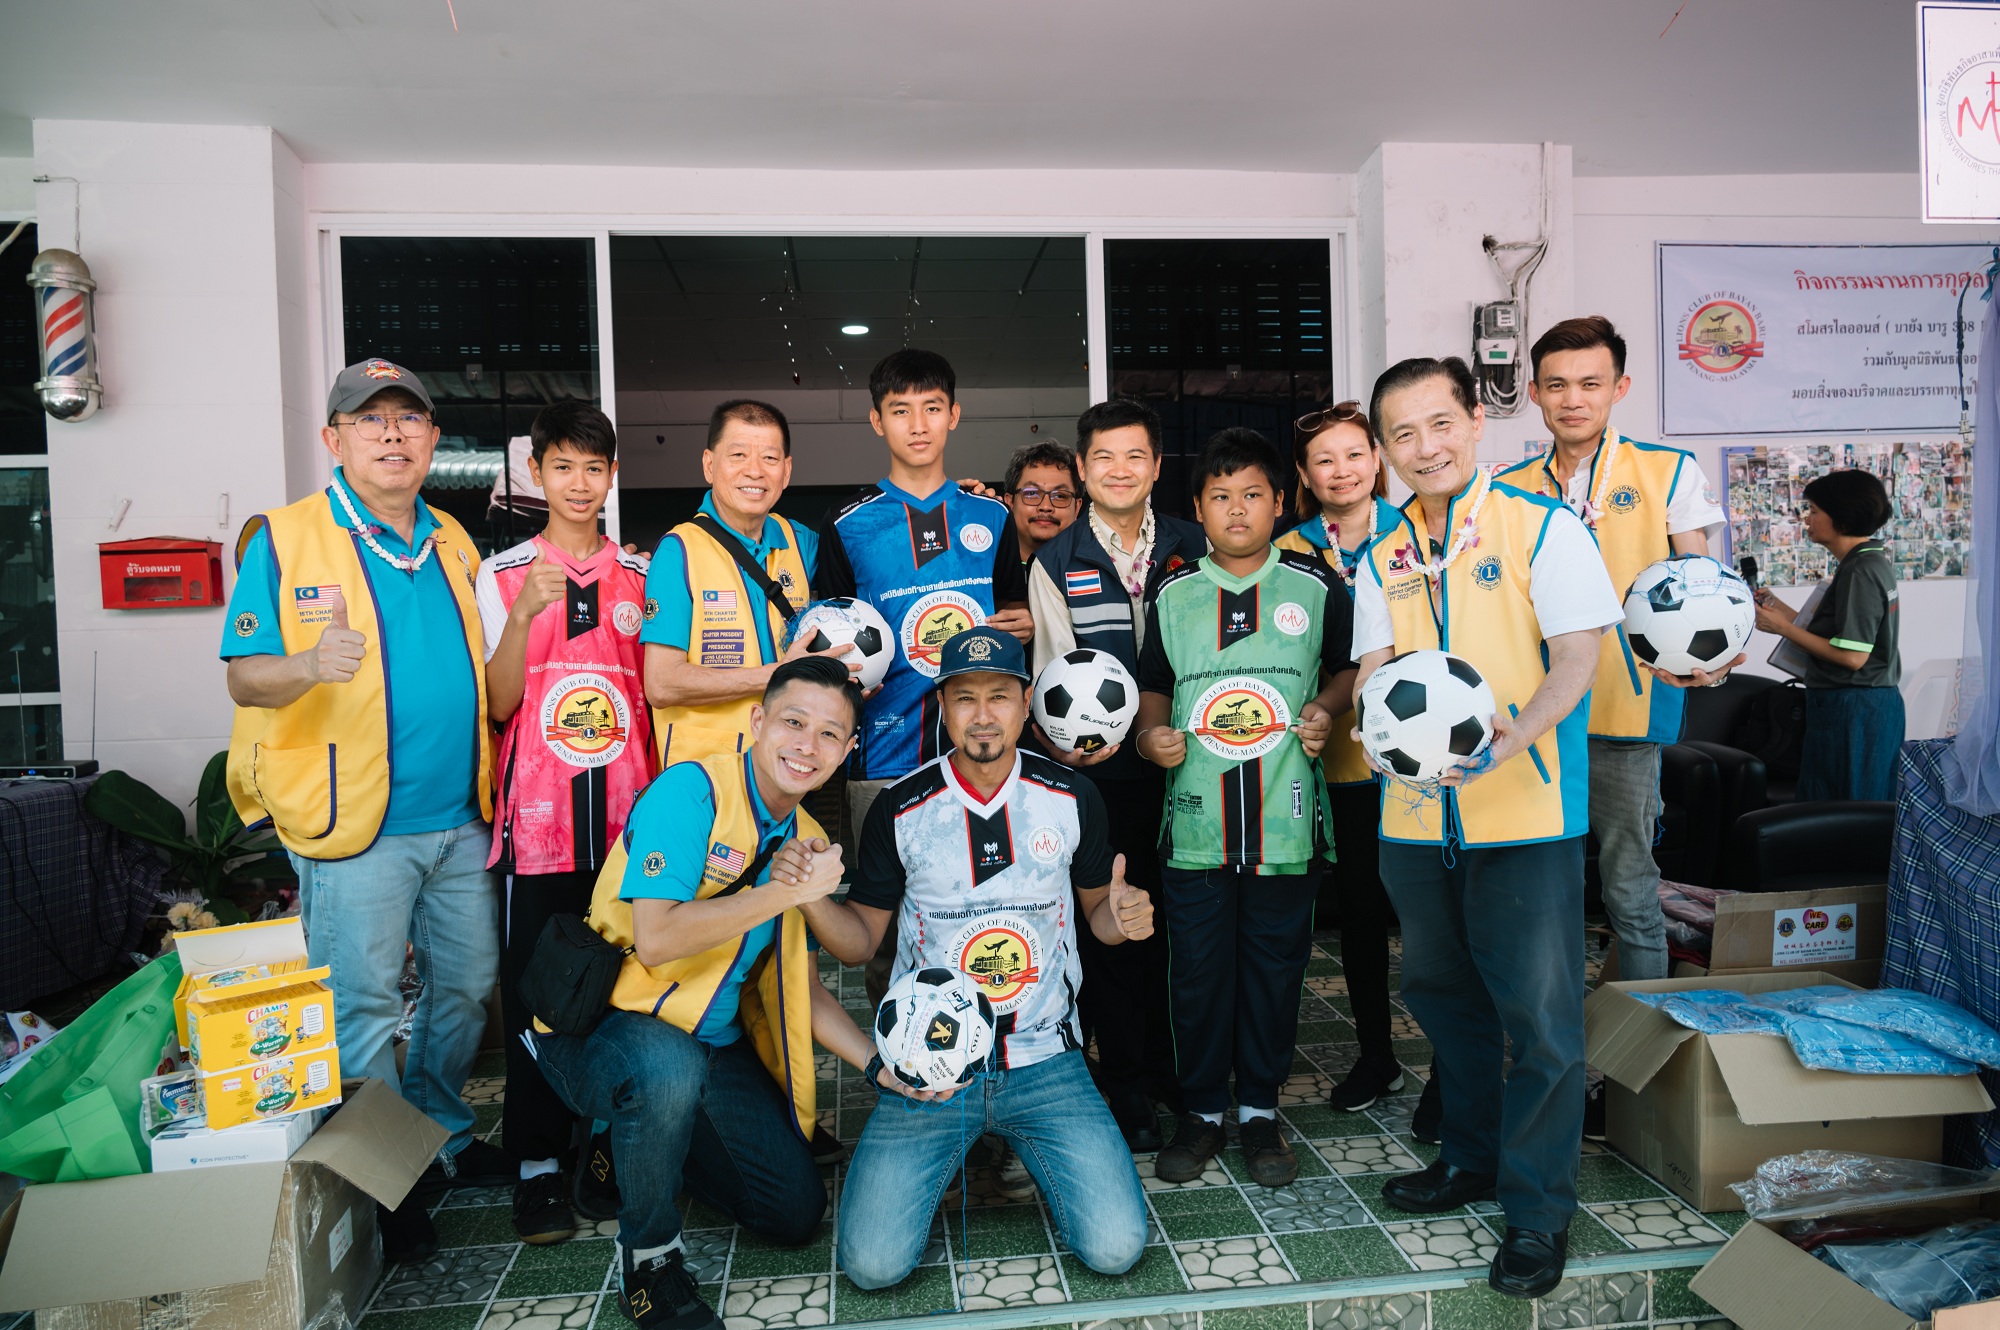 峇央峇魯獅子會贈送足球衣及足球運動用具于該院。